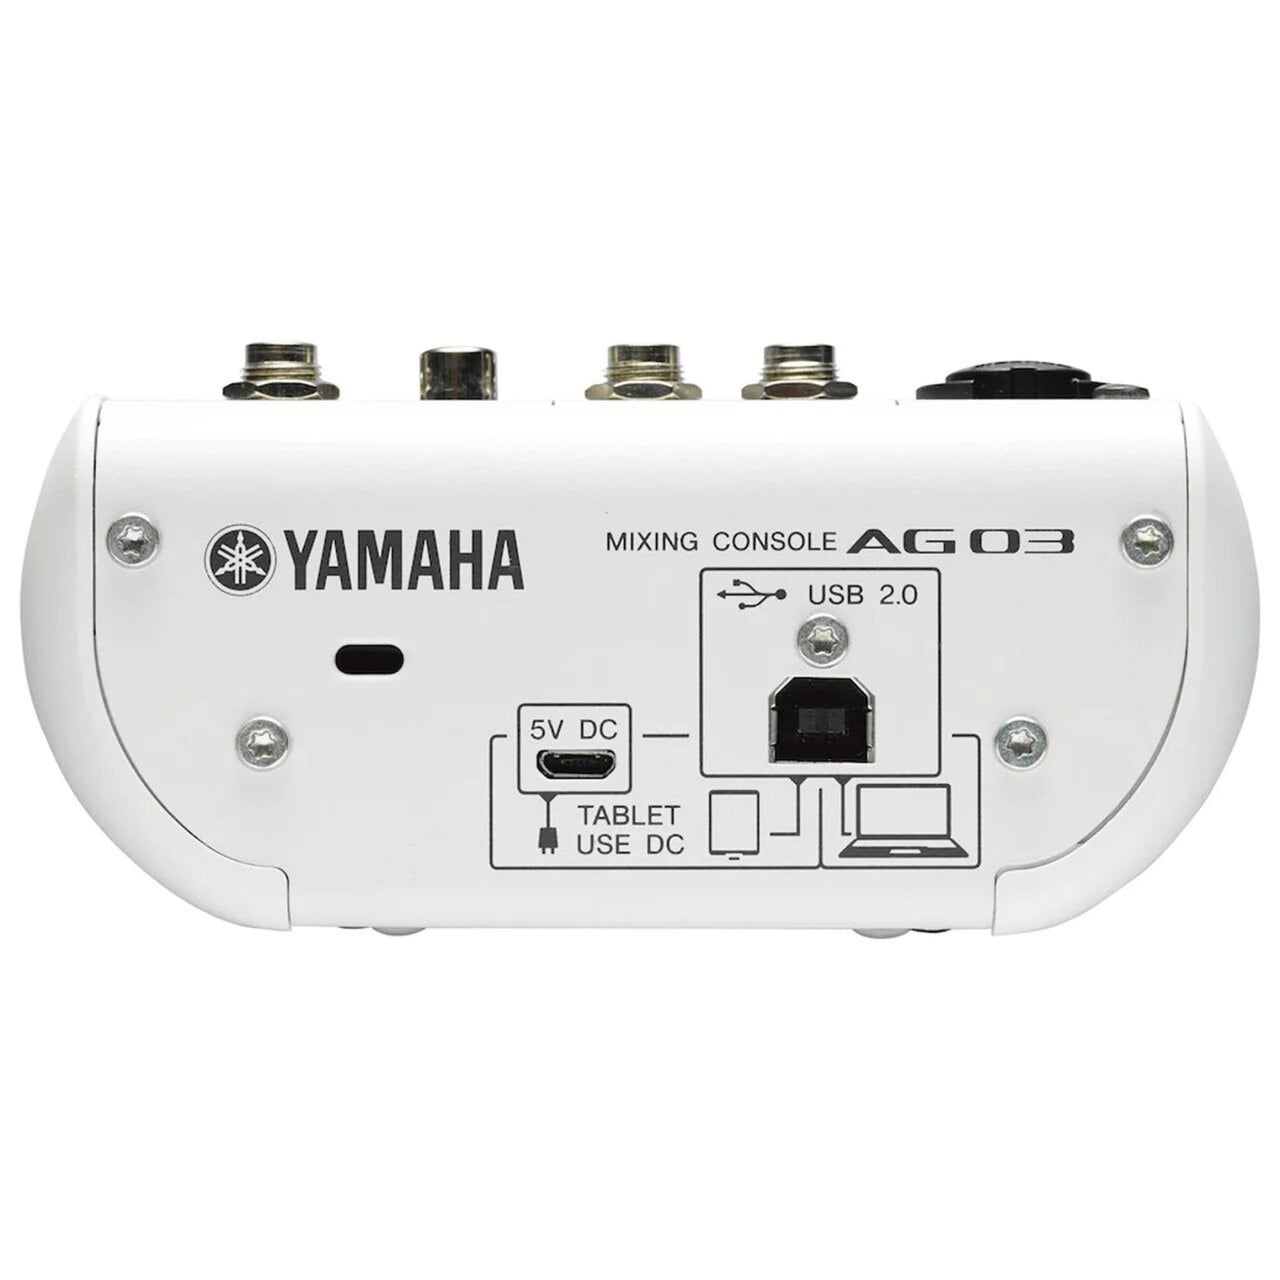 Mezcladora Yamaha 3 Can. C/Efectos Y Conexion Usb, Ag03